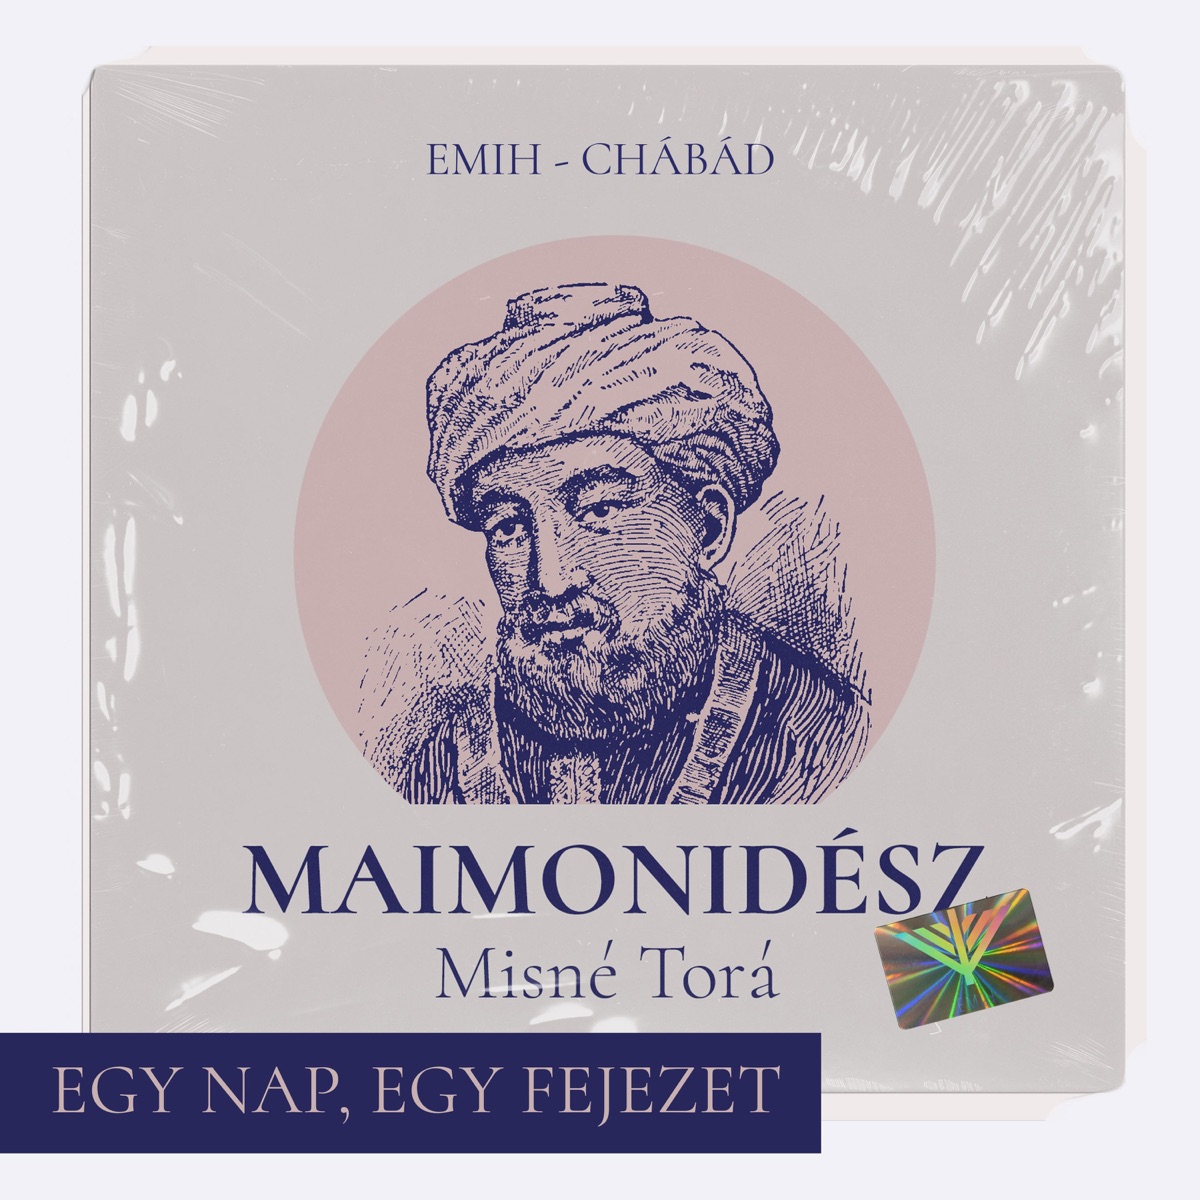 Maimonidész Misné Torá törvénykönyve – egy nap, egy fejezet